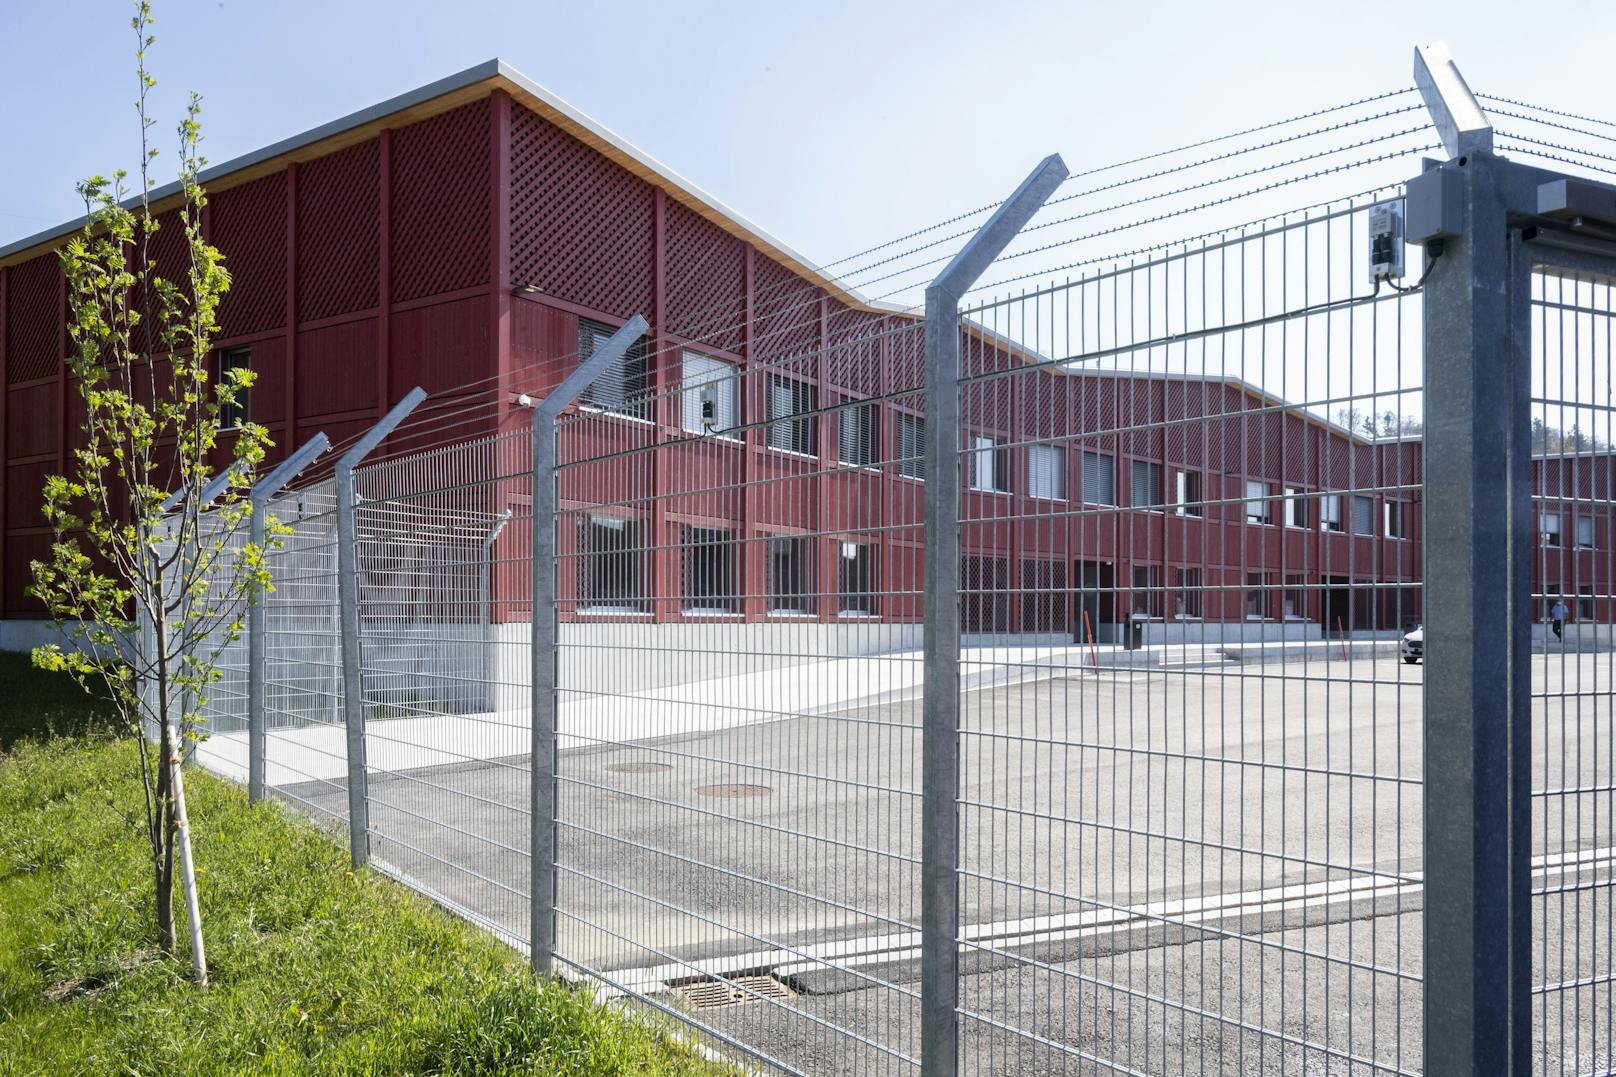 Dieses Schweizer-Gefängnis musste am Sonntag evakuiert werden. Der Häftling schloss sich selbst in eine Zelle und zündete ein heftiges Feuer.